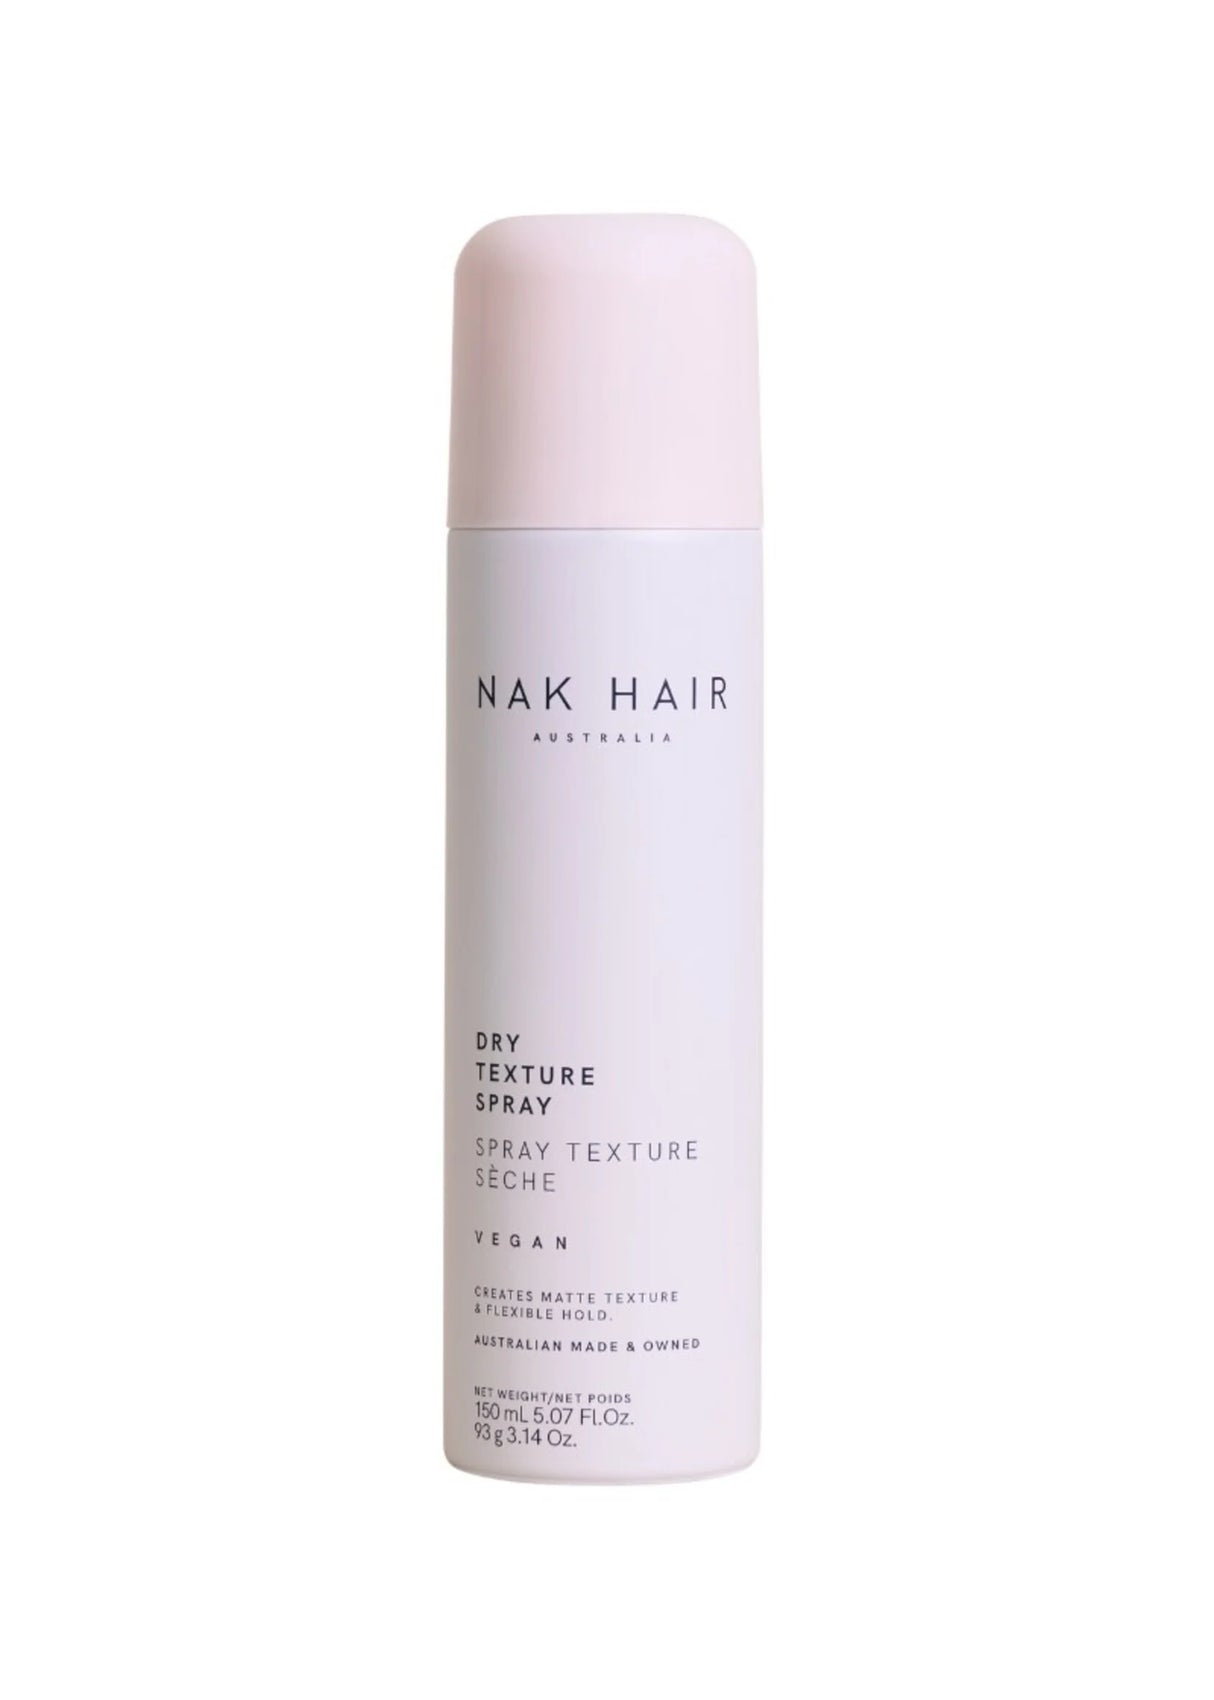 Nak Hair Dry Texture Spray 150g